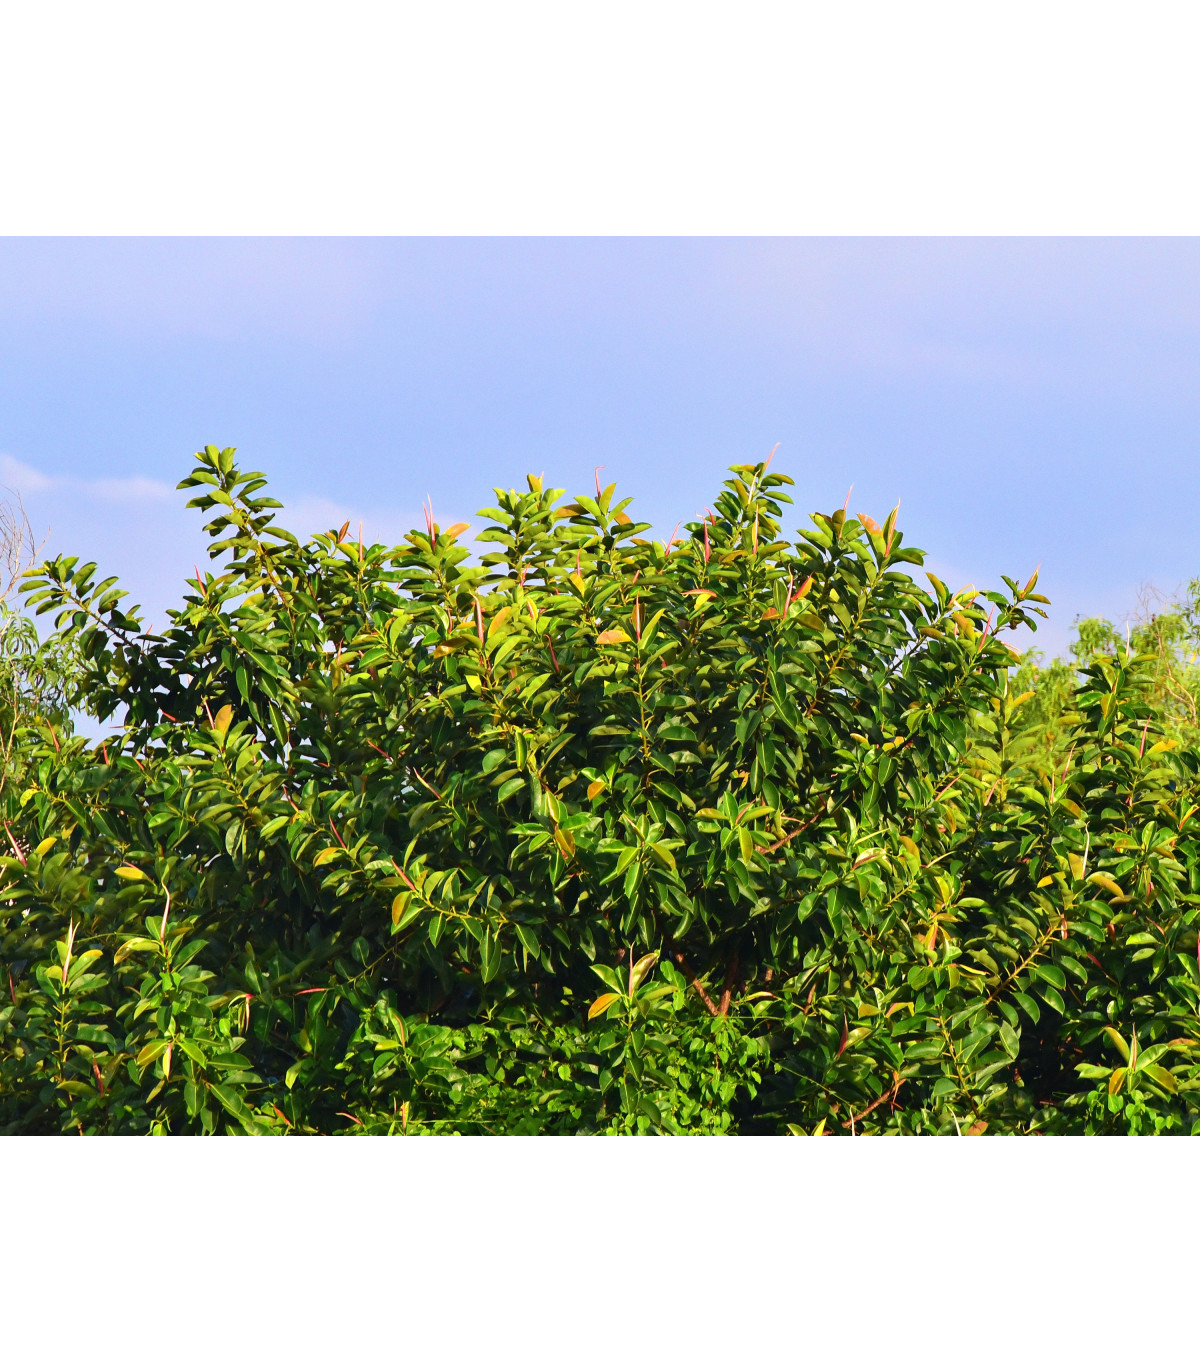 Fikus indický - Ficus benghalensis - semená - 5 ks